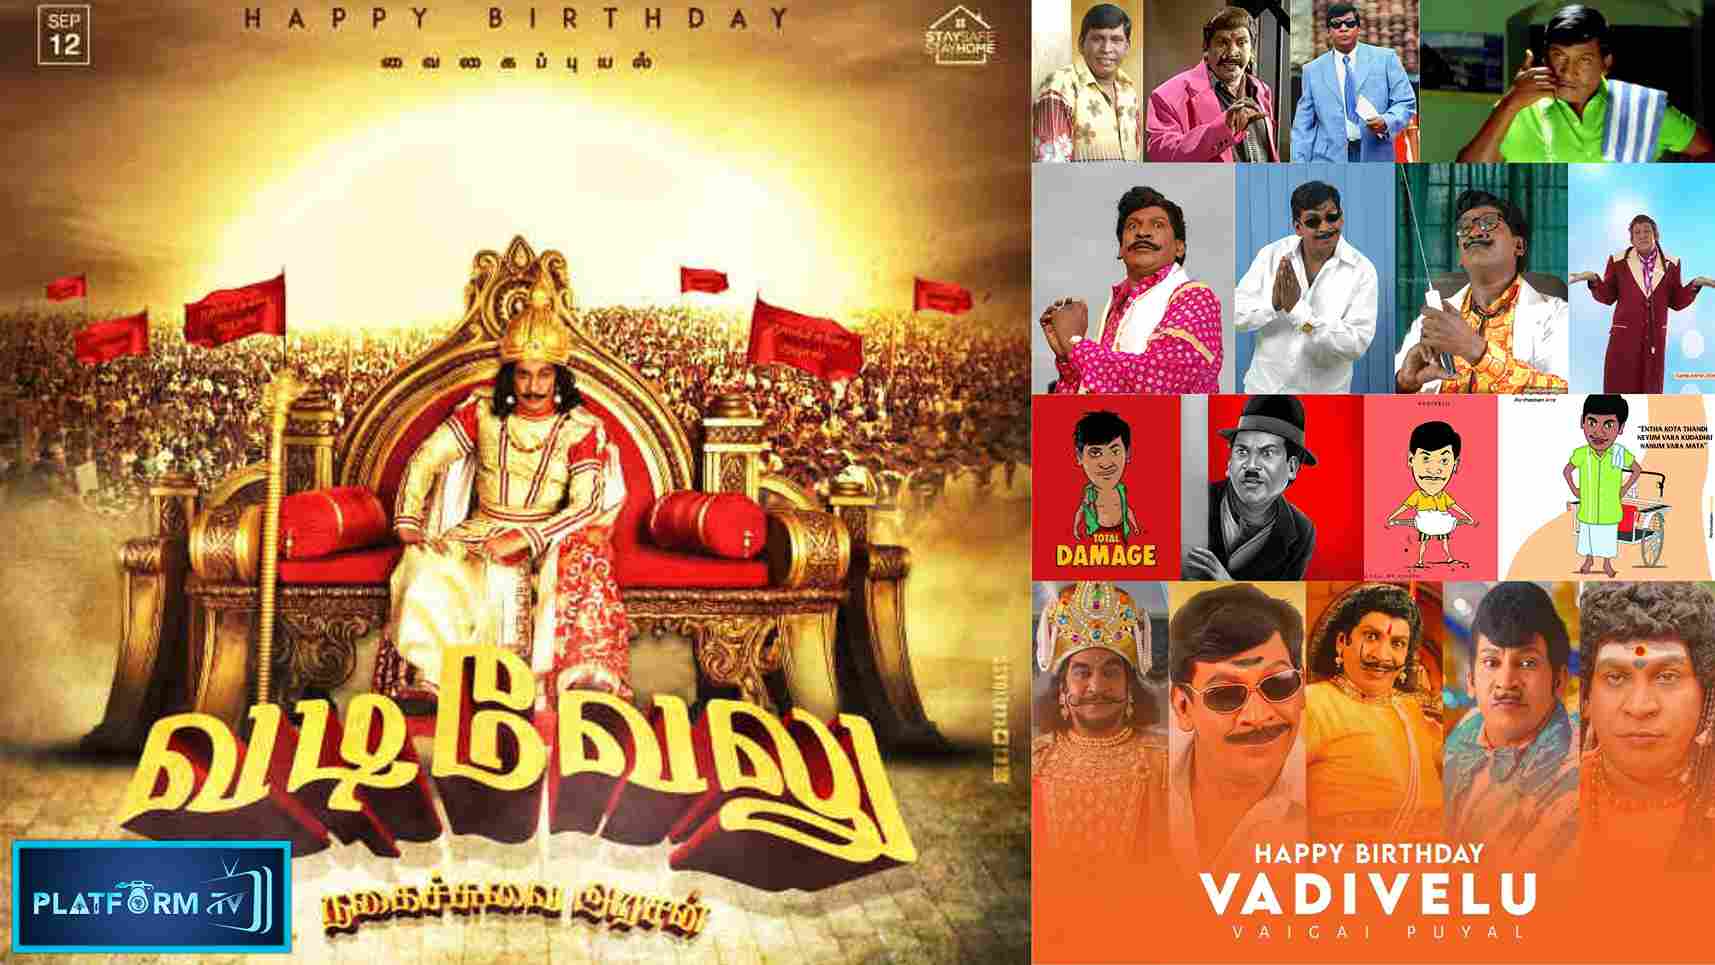 Happy Birthday Vadivelu - Platform Tamil